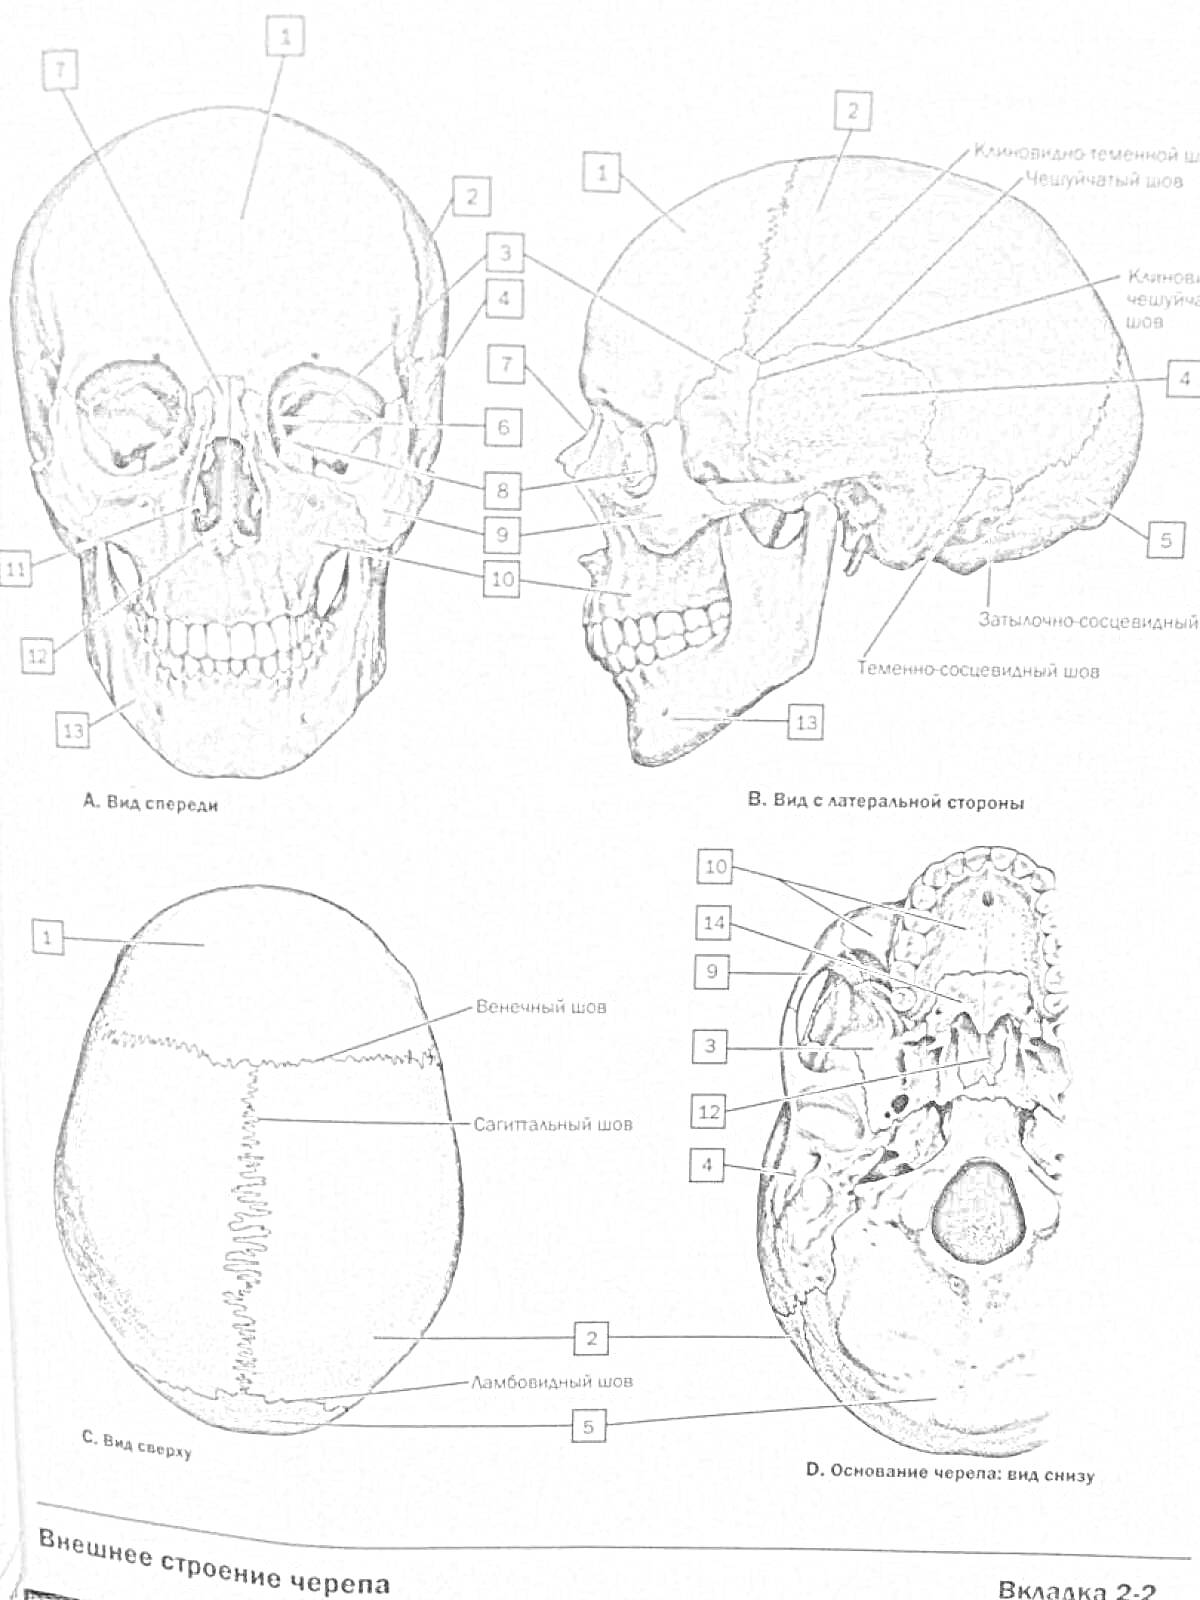 Череп человека с разными видами и отмеченными элементами (вид спереди, вид слева, вид сверху, вид снизу)